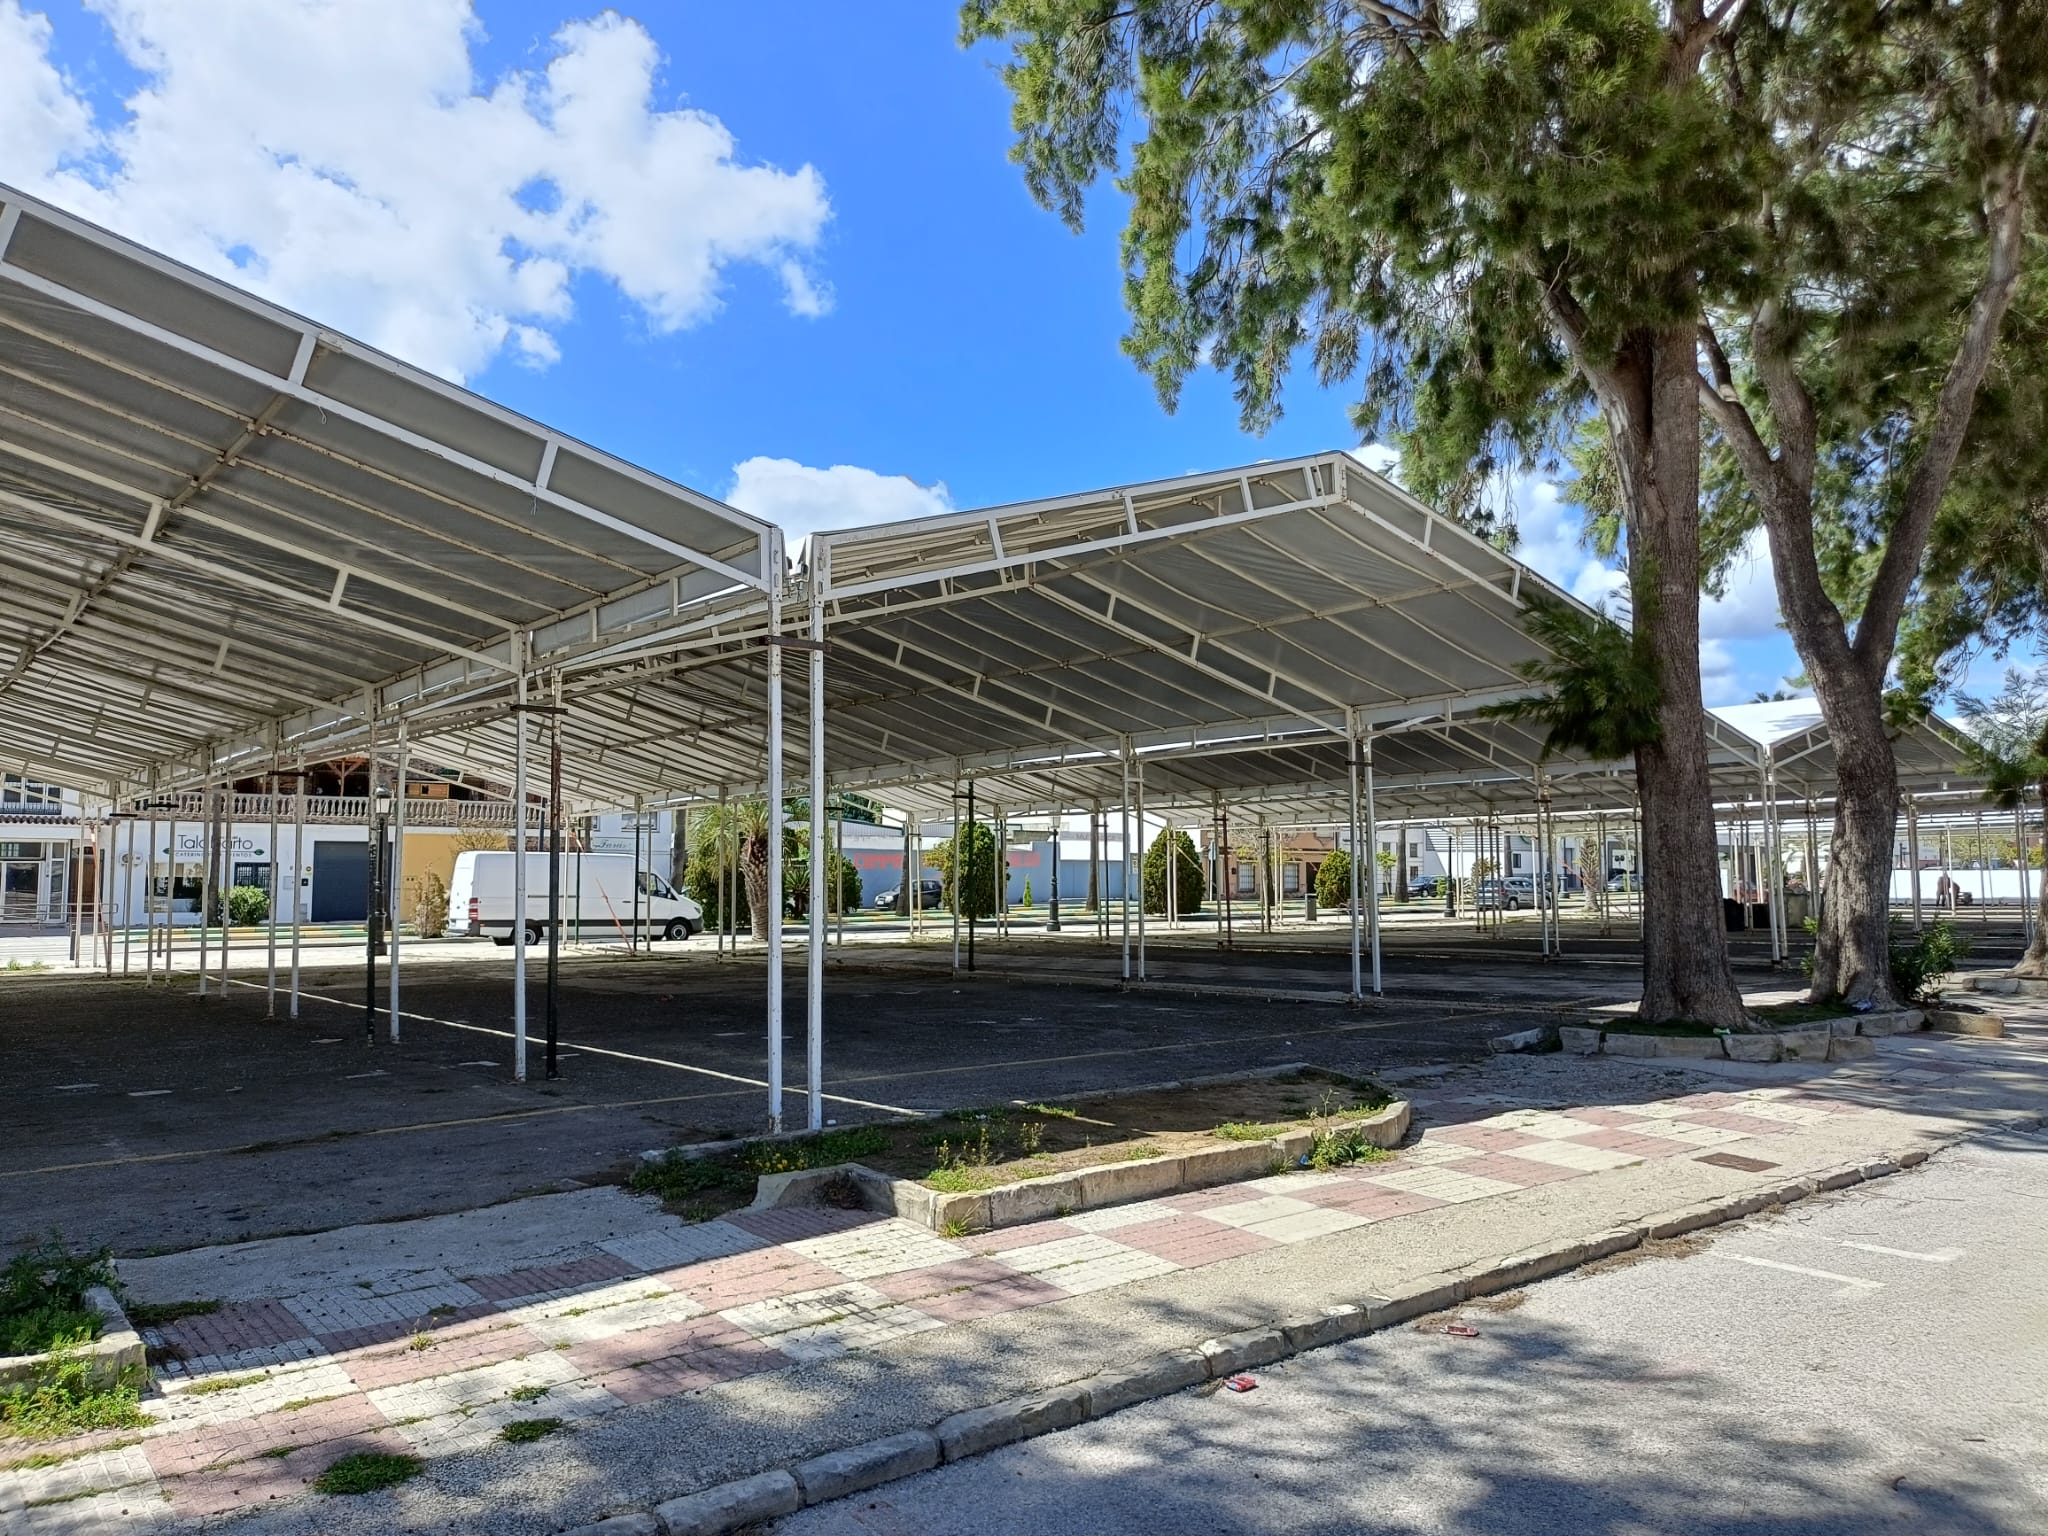 La reforma del pavimento del recinto ferial de Los Barrios comenzará después de la feria